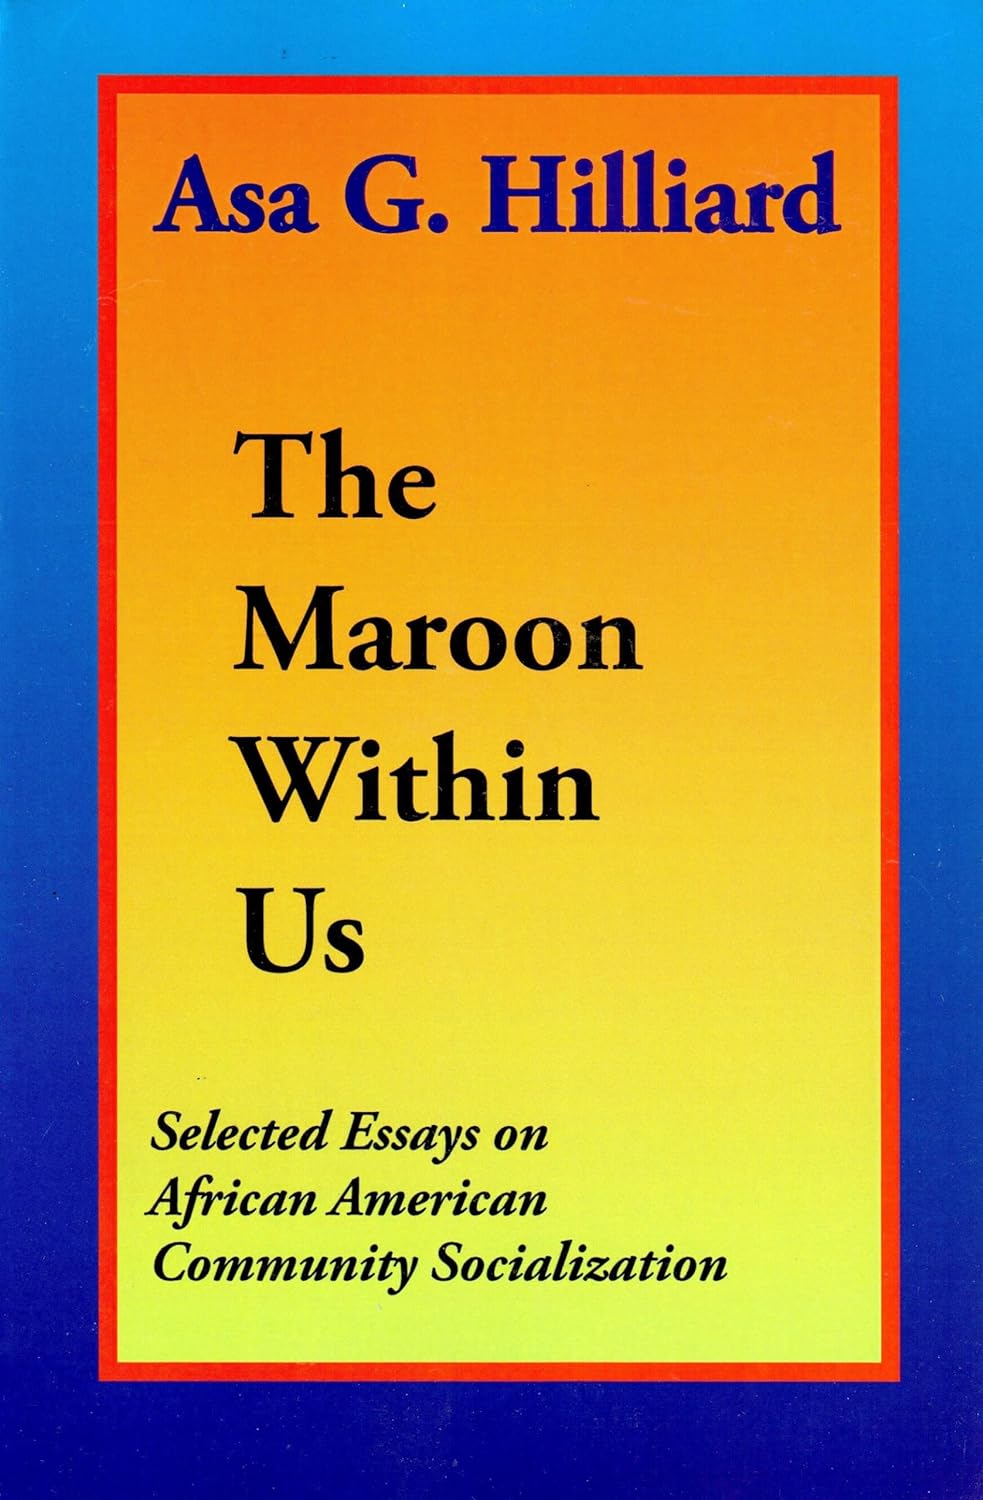 The Maroon Within Us The Maroon Within Us by Asa G. Hilliard III